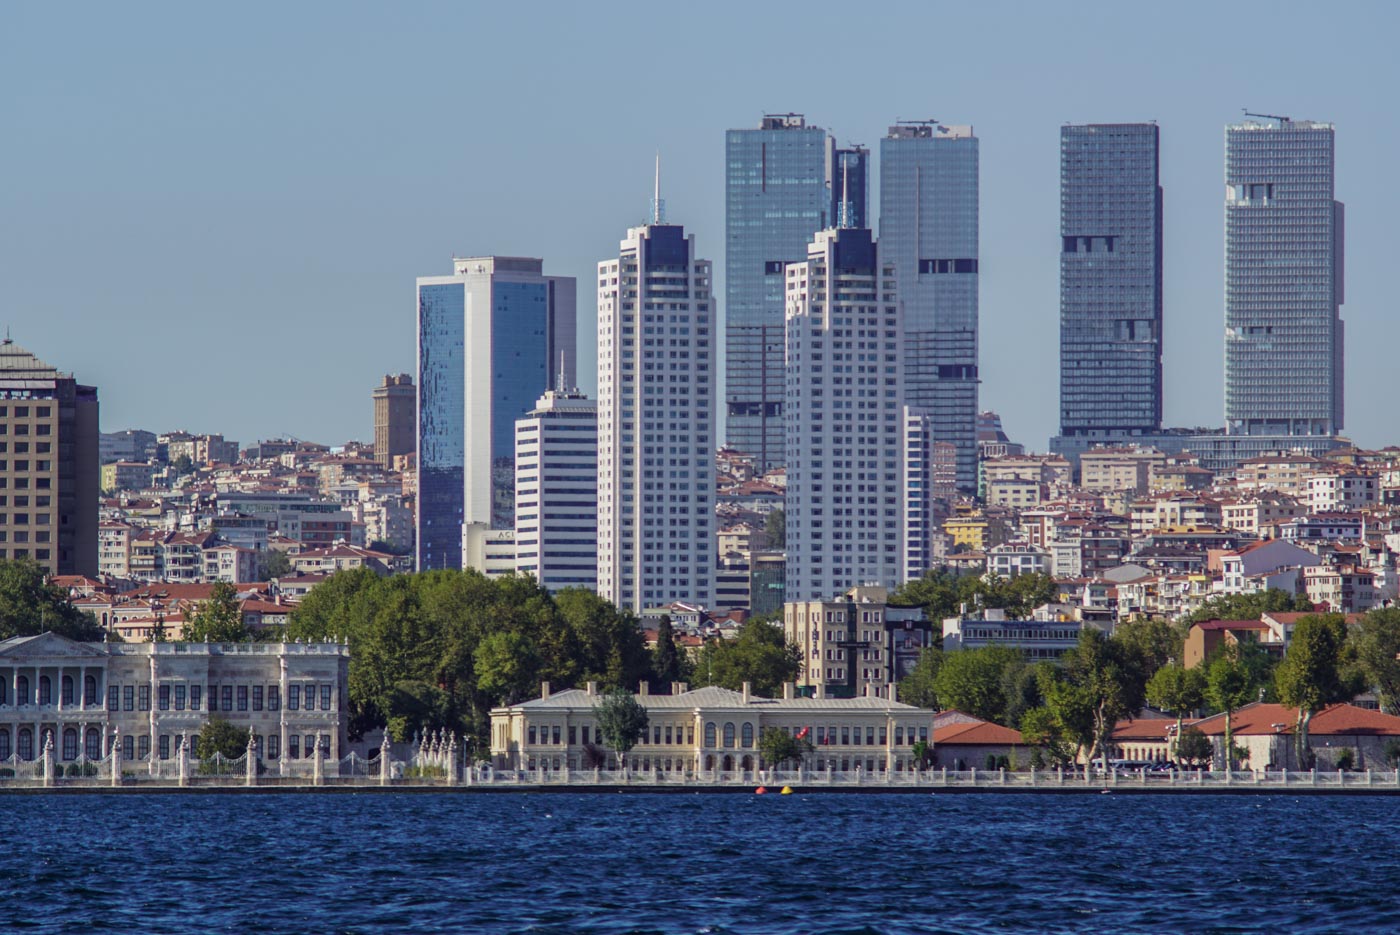 Blick vom Bosporus aus auf die Westseite von Istanbul. In der ersten Reihe am Ufer stehen klassische Bauten dahinter erheben sich Wolkenkratzer und mehrstöckige Wohngebäude.